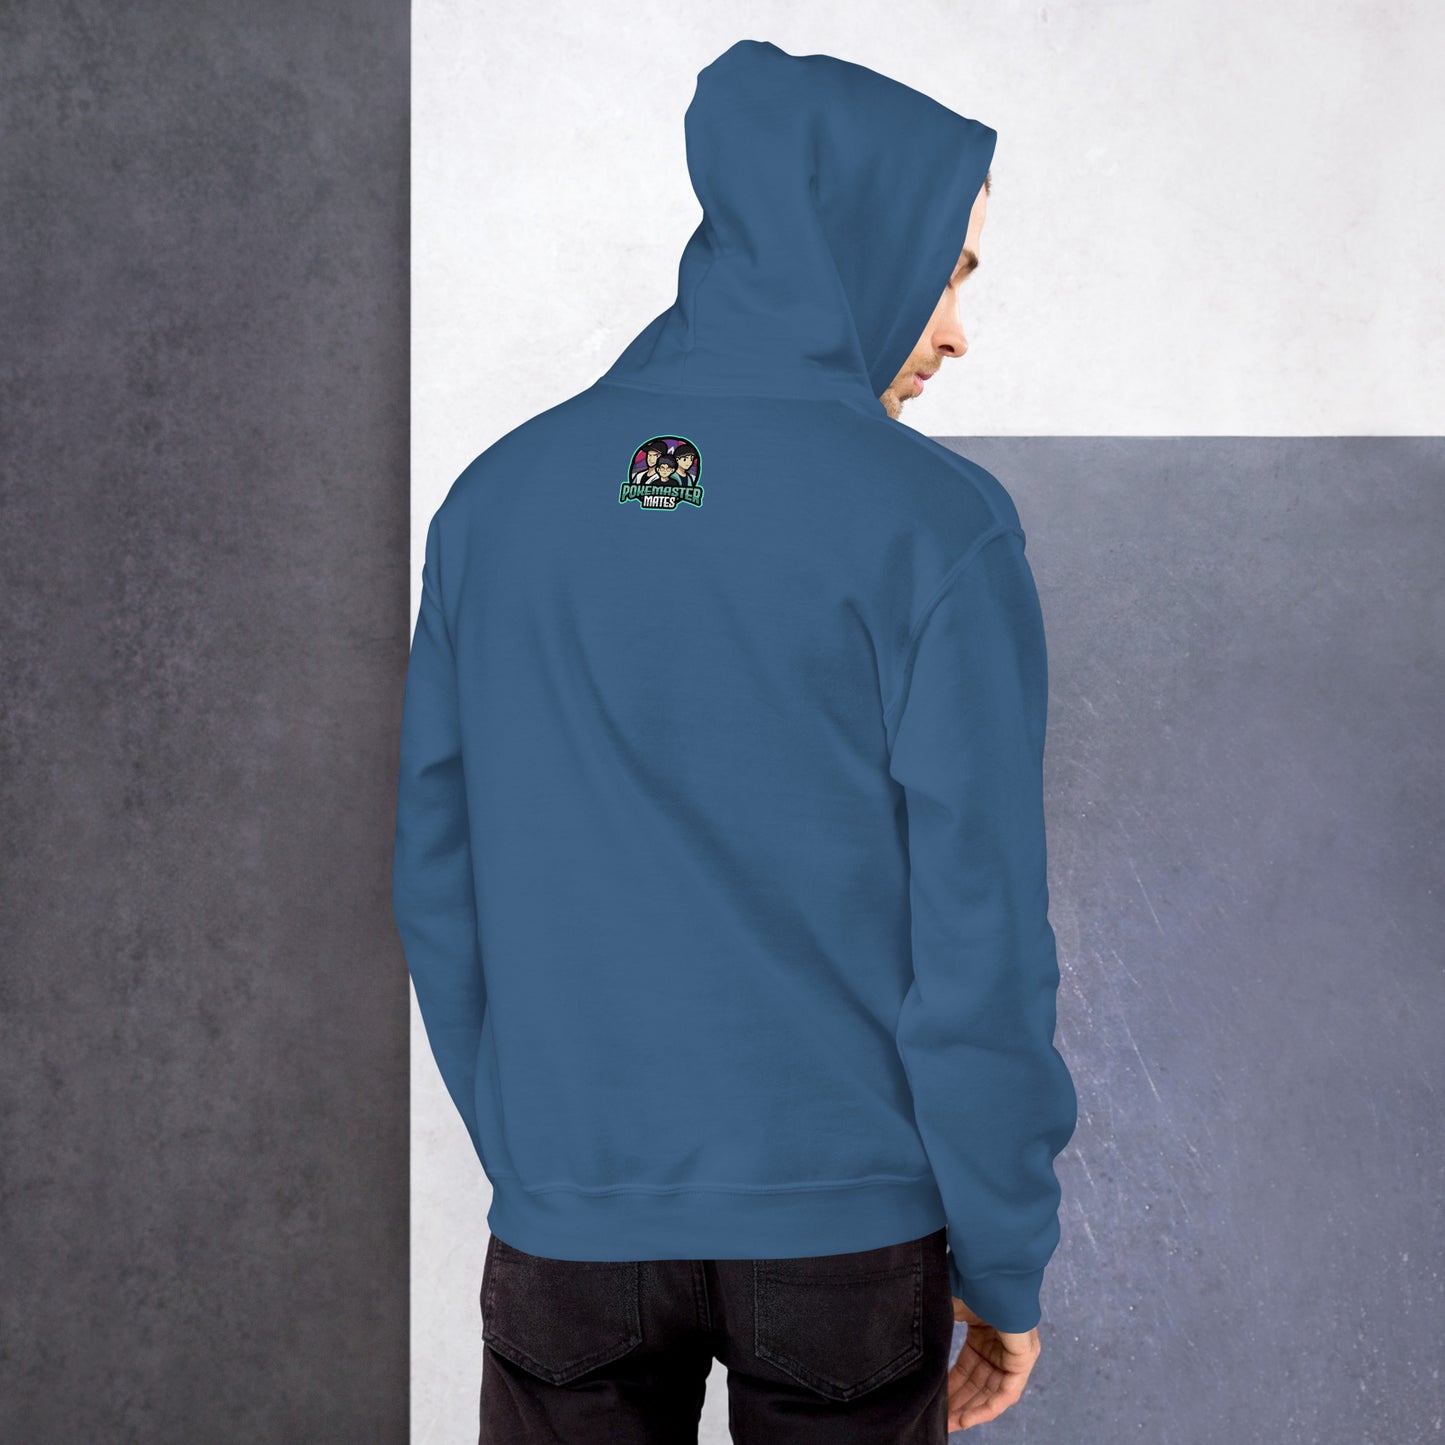 PMM's SHEEEEESSSH Unisex hoodie